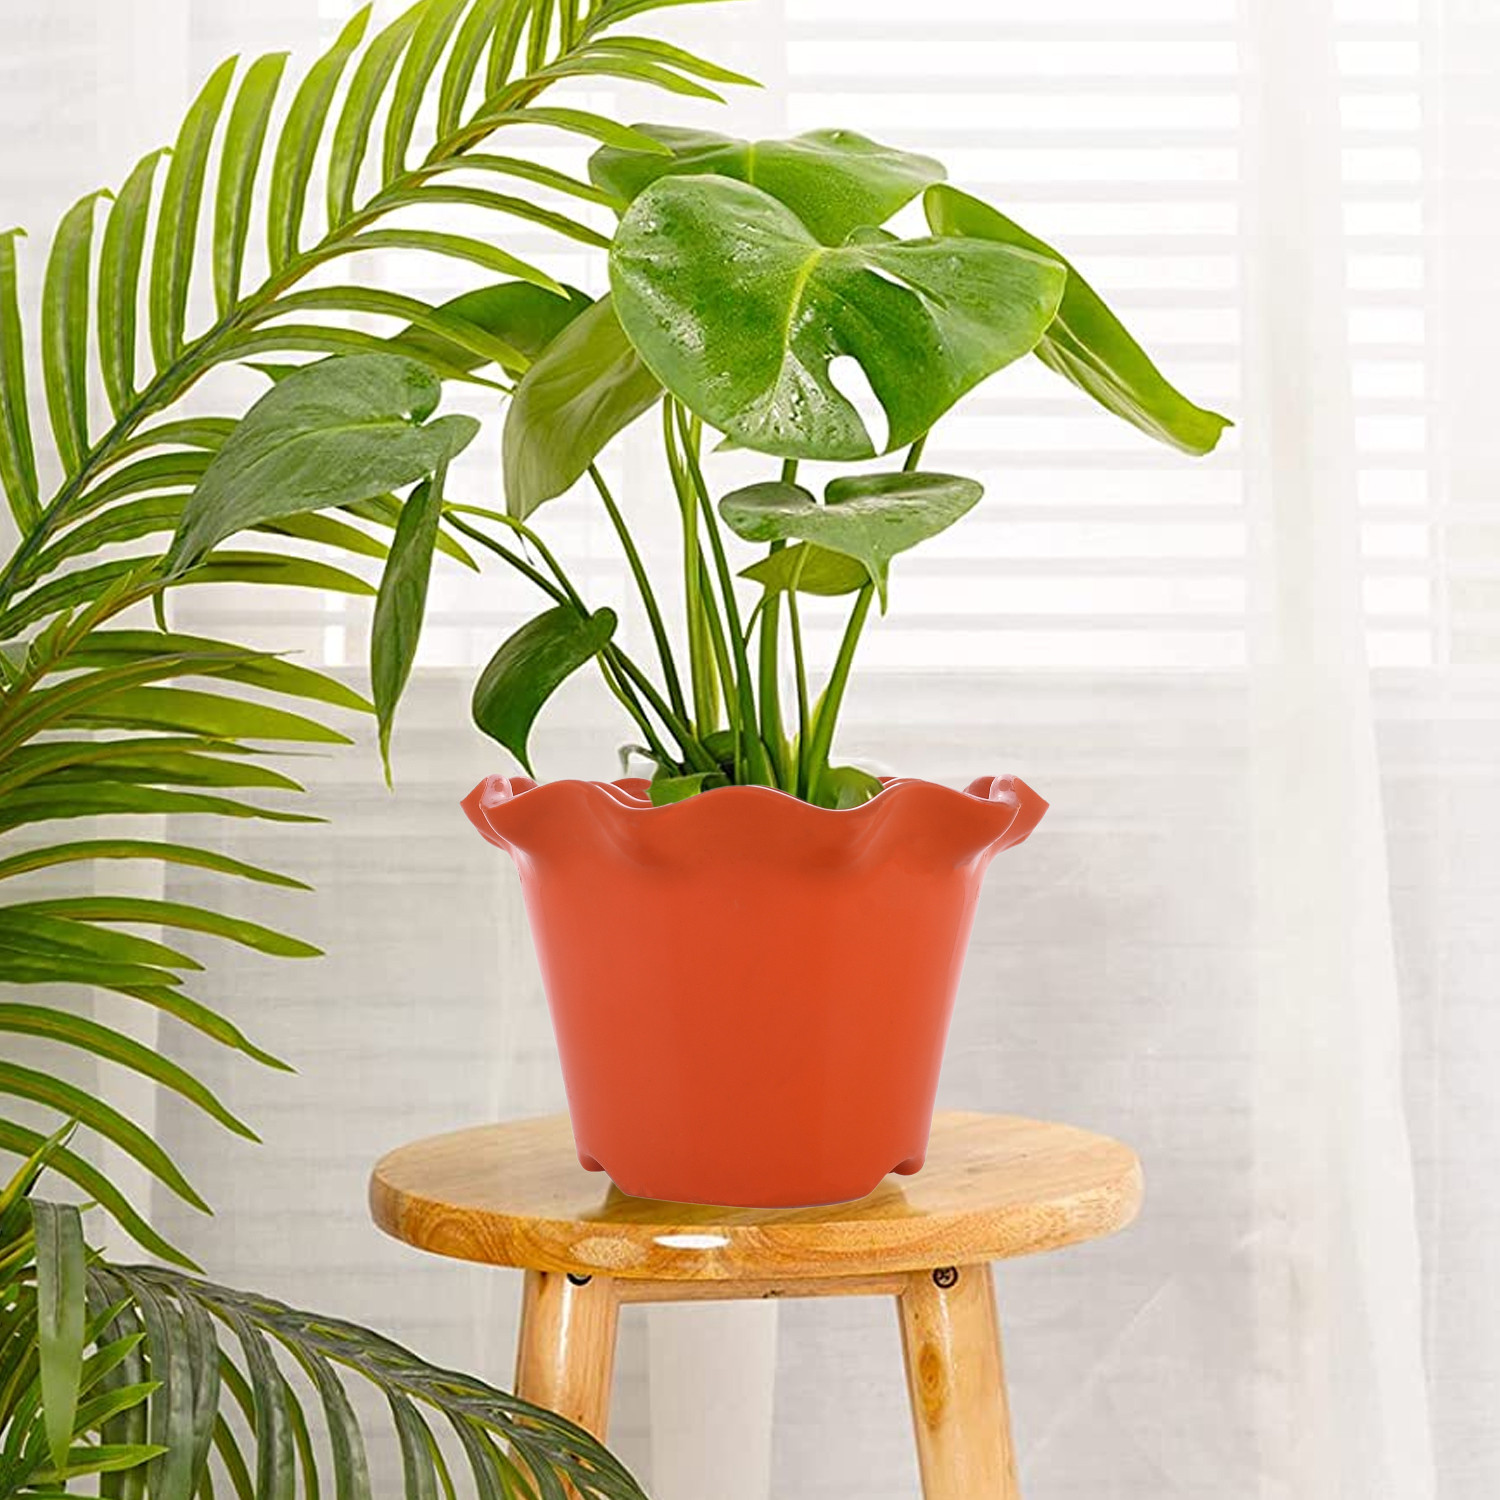 Kuber Industries Blossom Flower Pot|Durable Plastic Flower Pots|Planters for Home Décor|Garden|Living Room|Balcony|Pack of 2 (White & Orange)